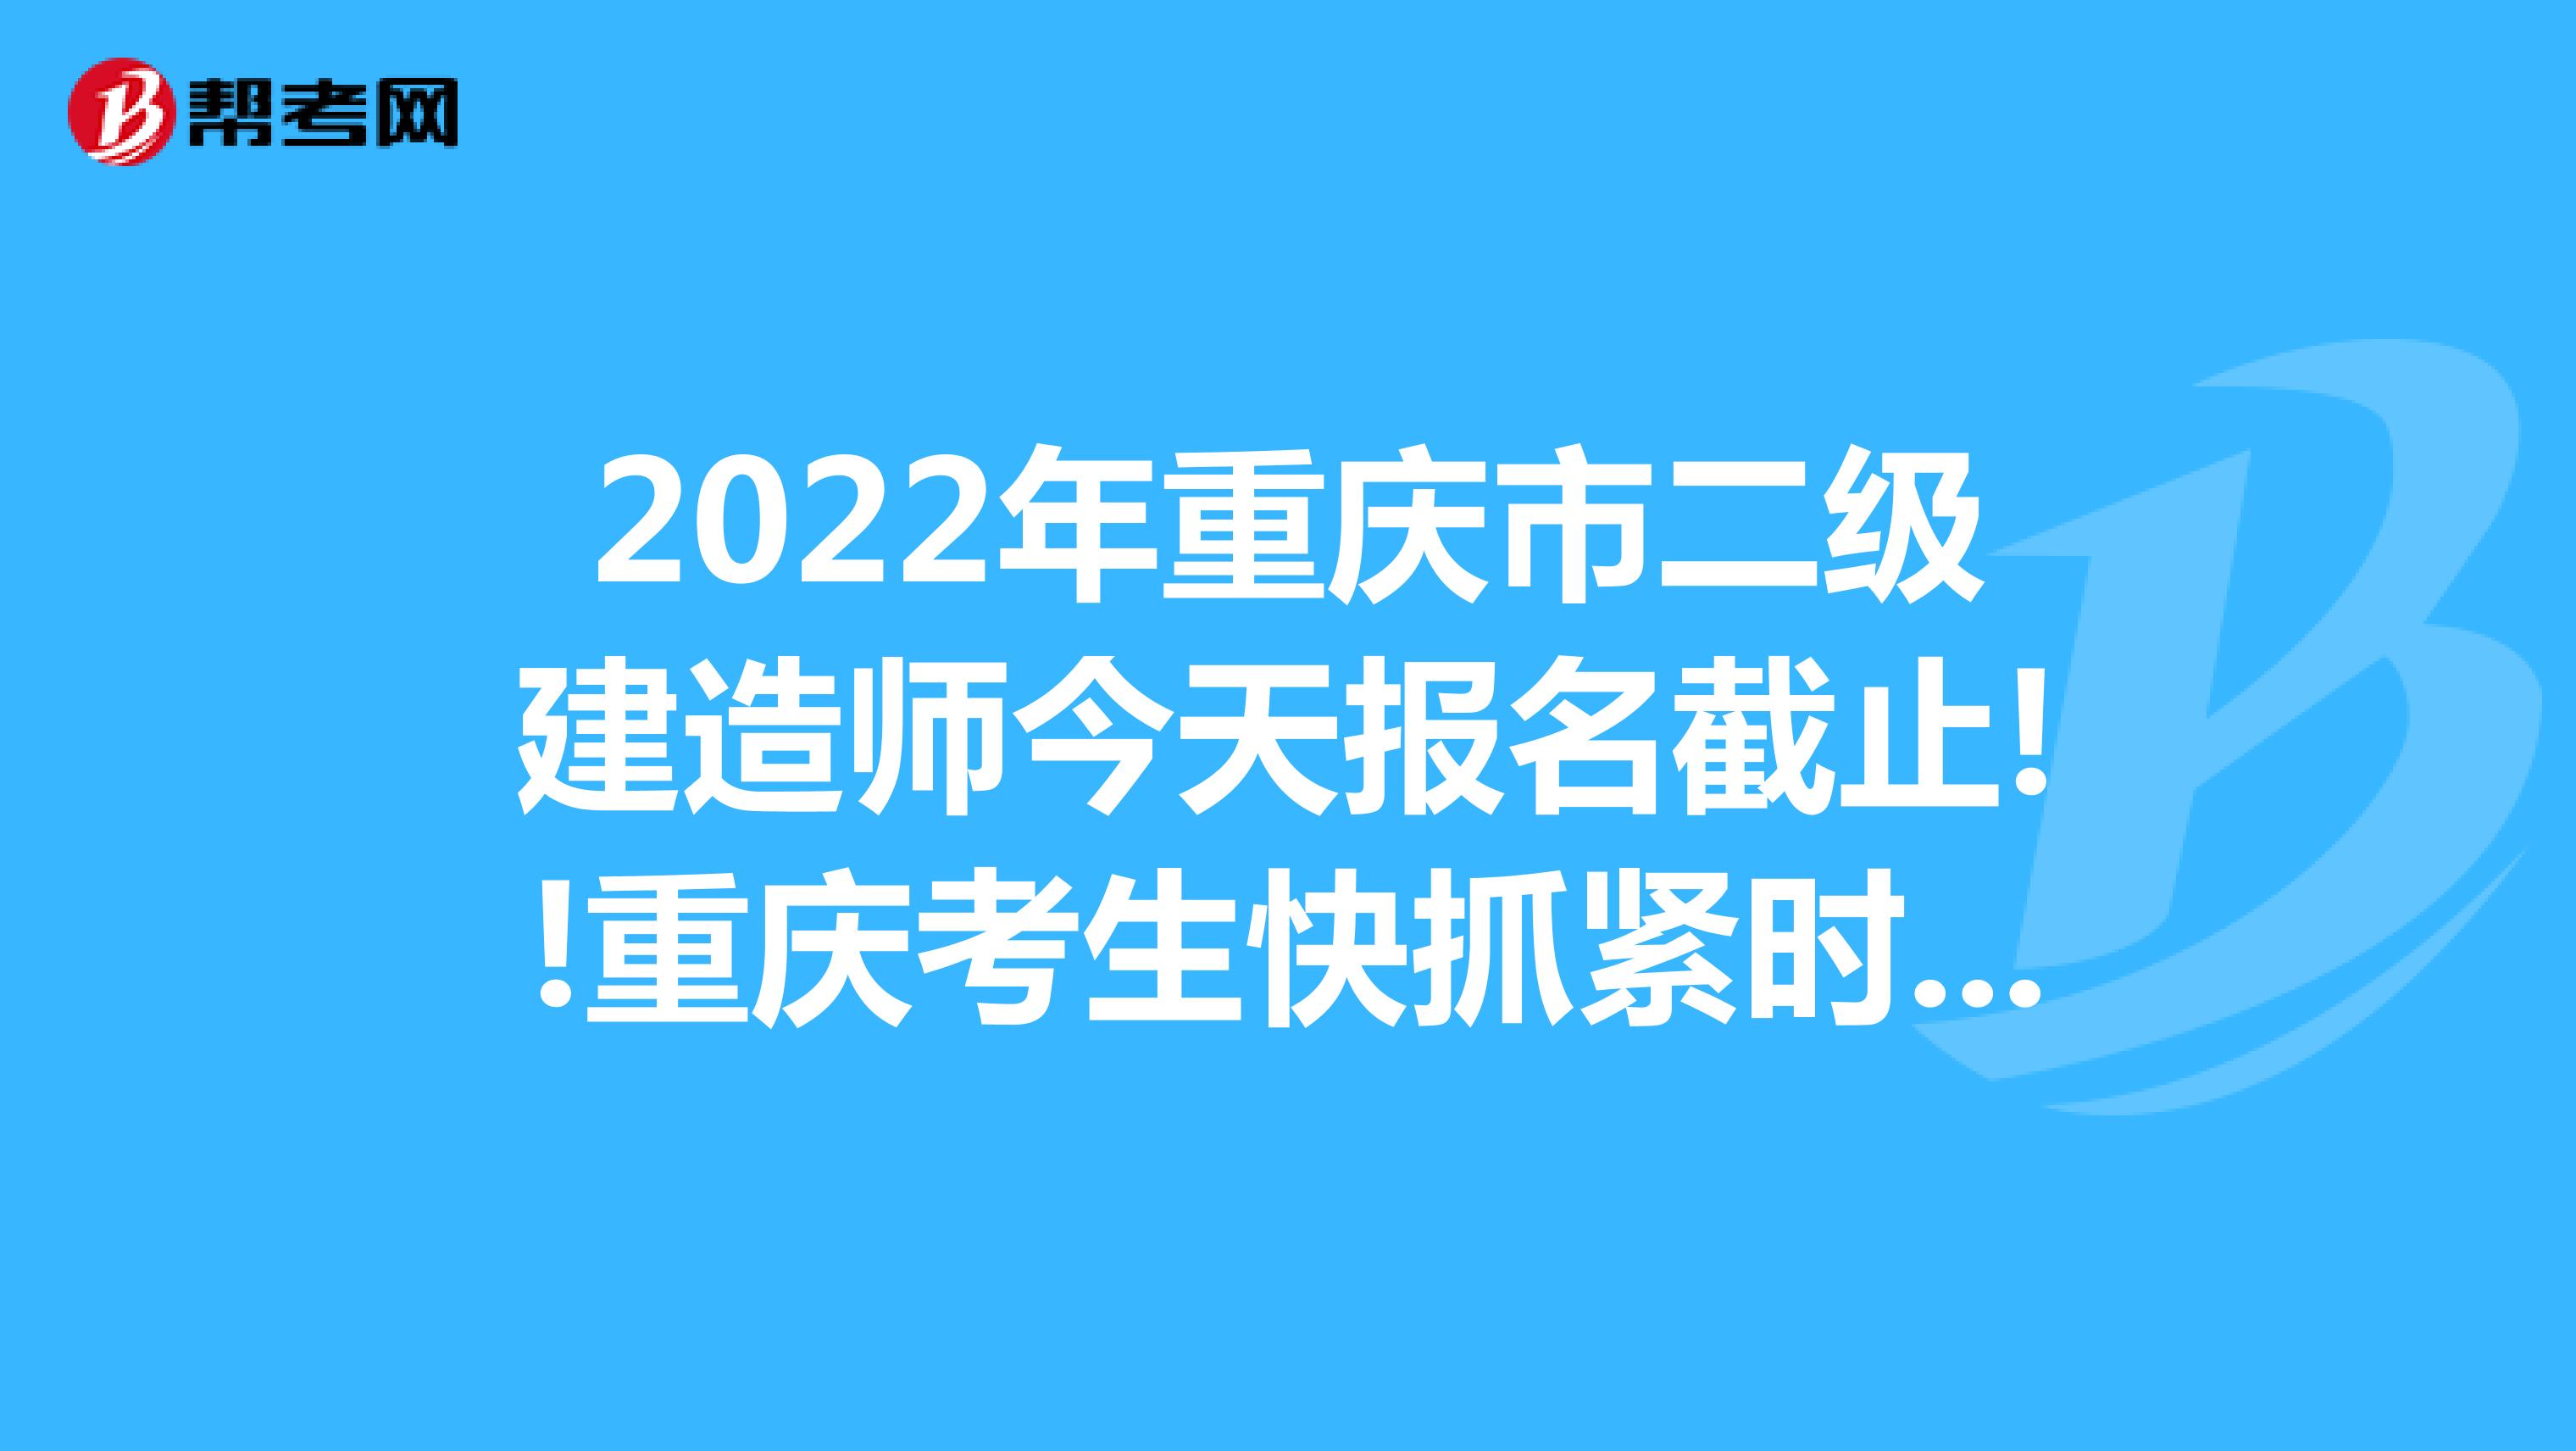 2022年重庆市二级建造师今天报名截止!重庆考生快抓紧时间报名!